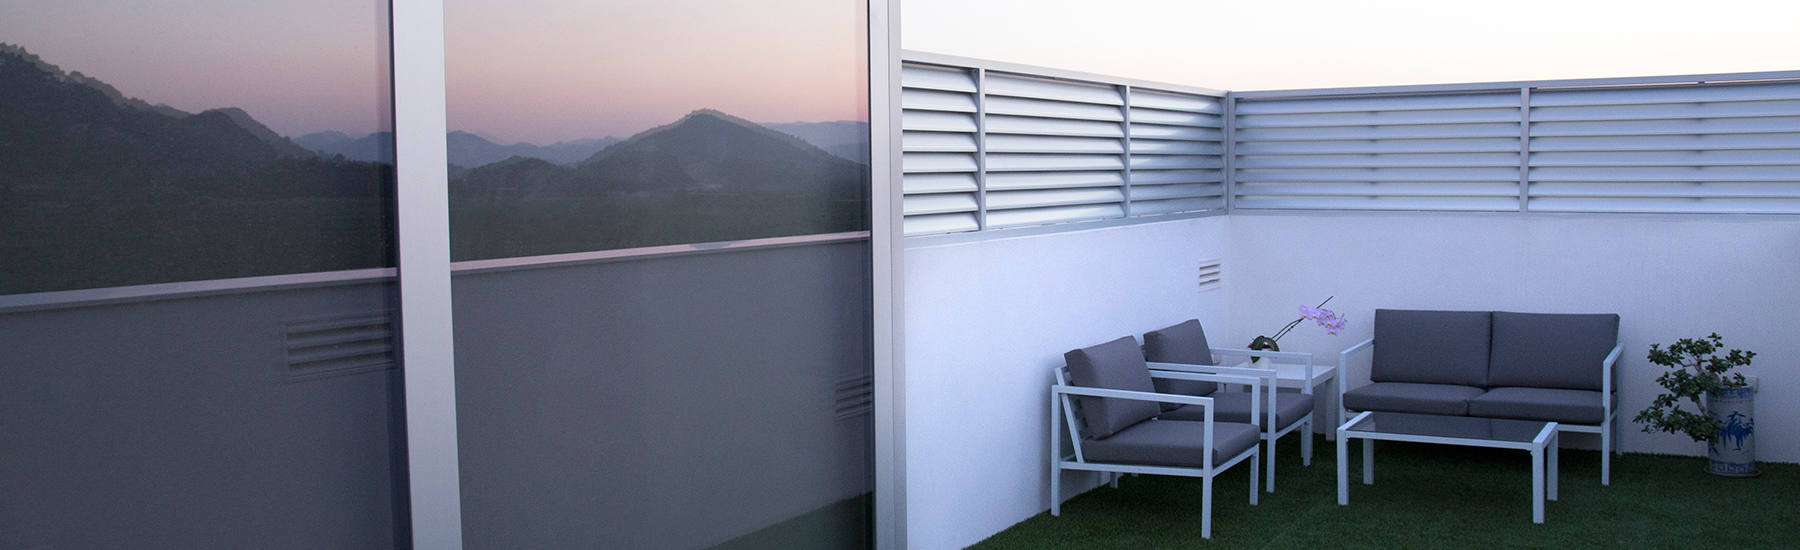 Ventanal con acceso a terraza junto a una celosía fija realizados en aluminio anonizado natural